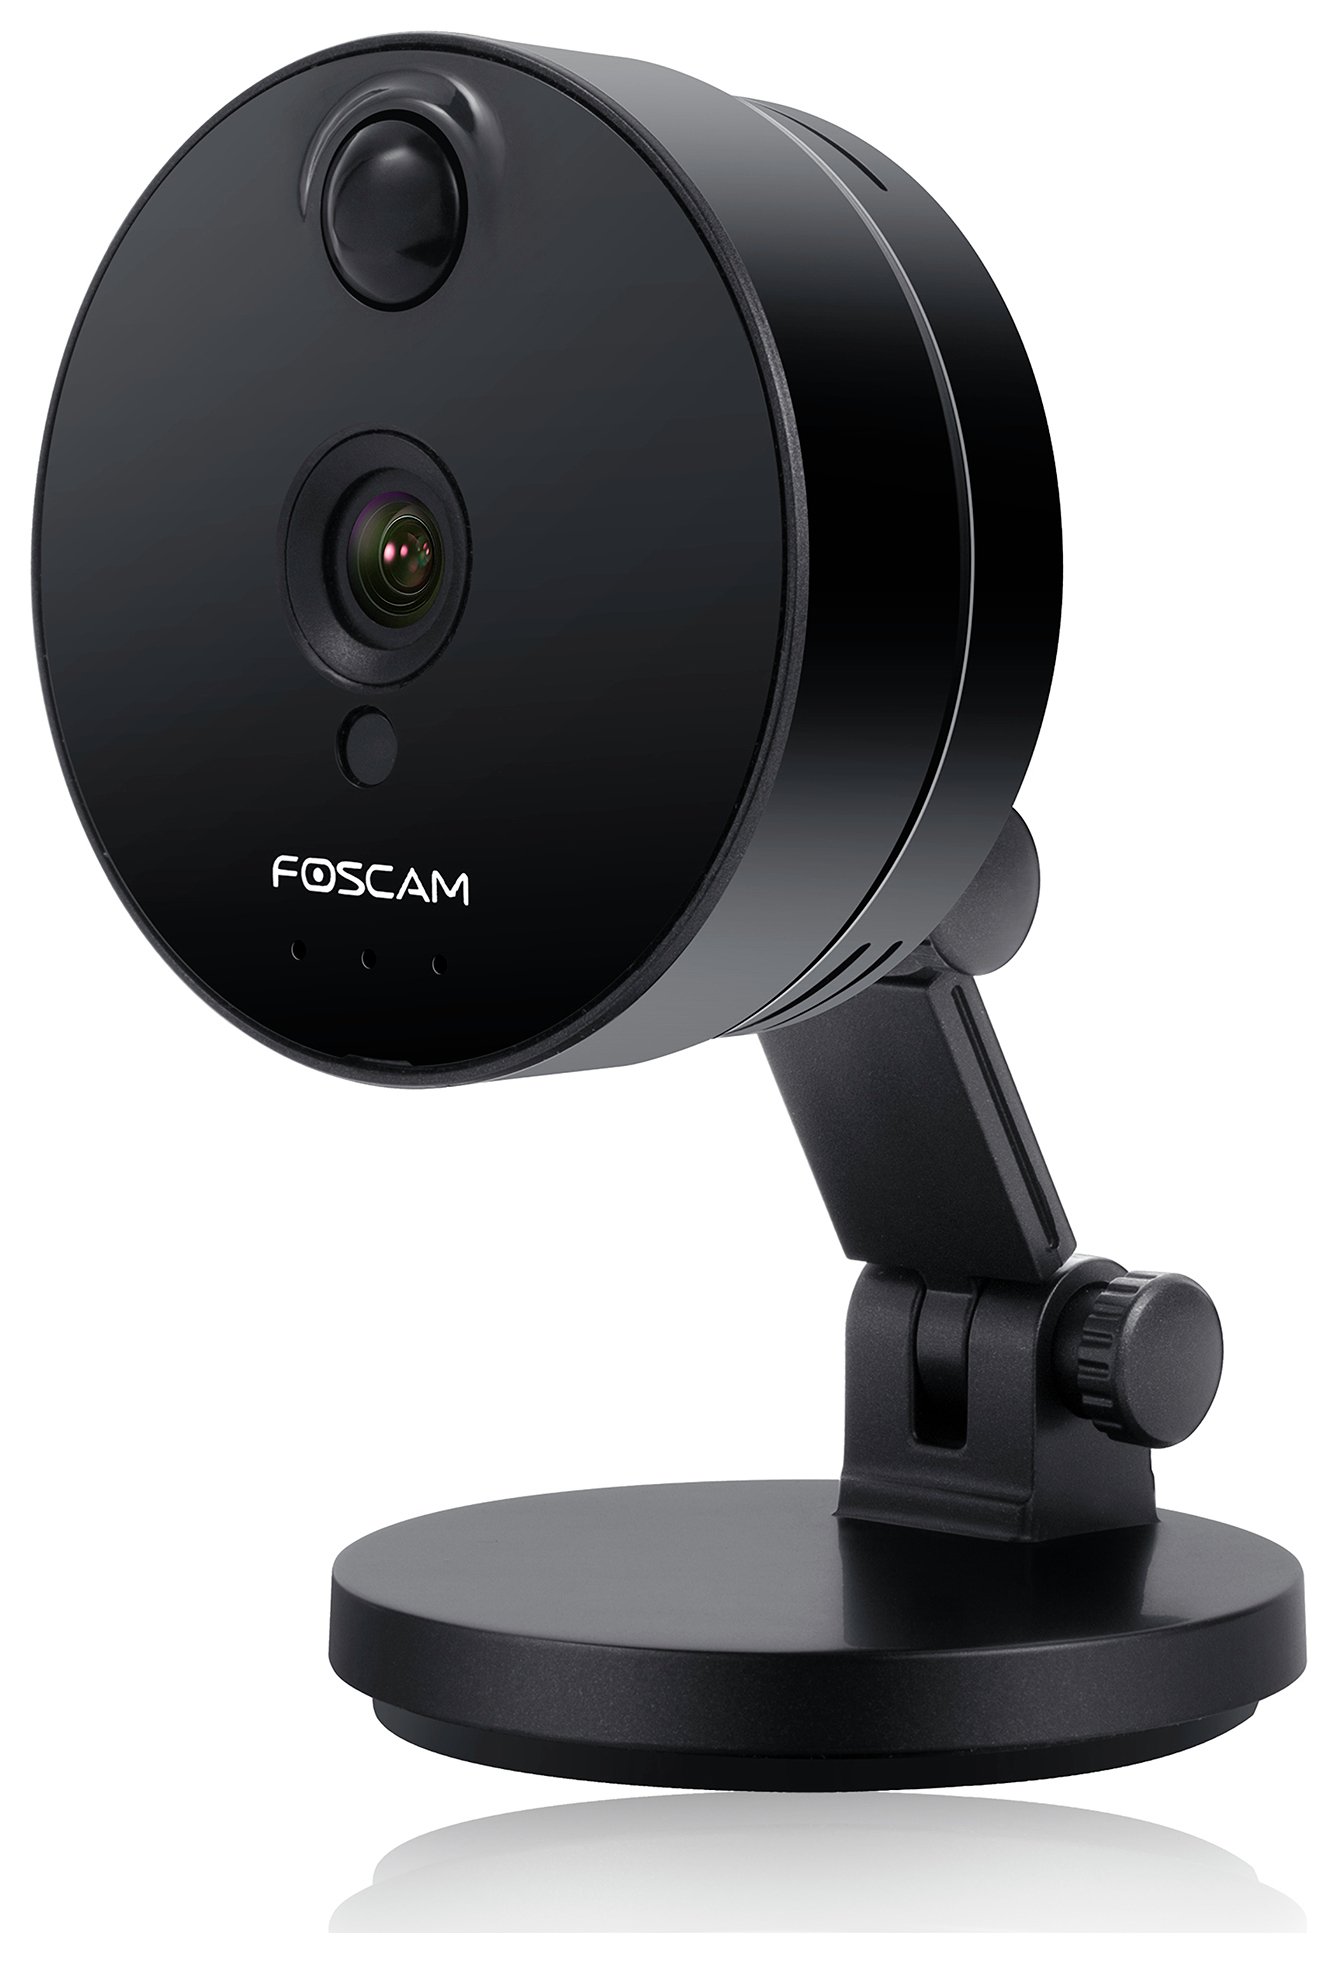 Foscam C1 720P HD Indoor Wireless IP Camera - Black